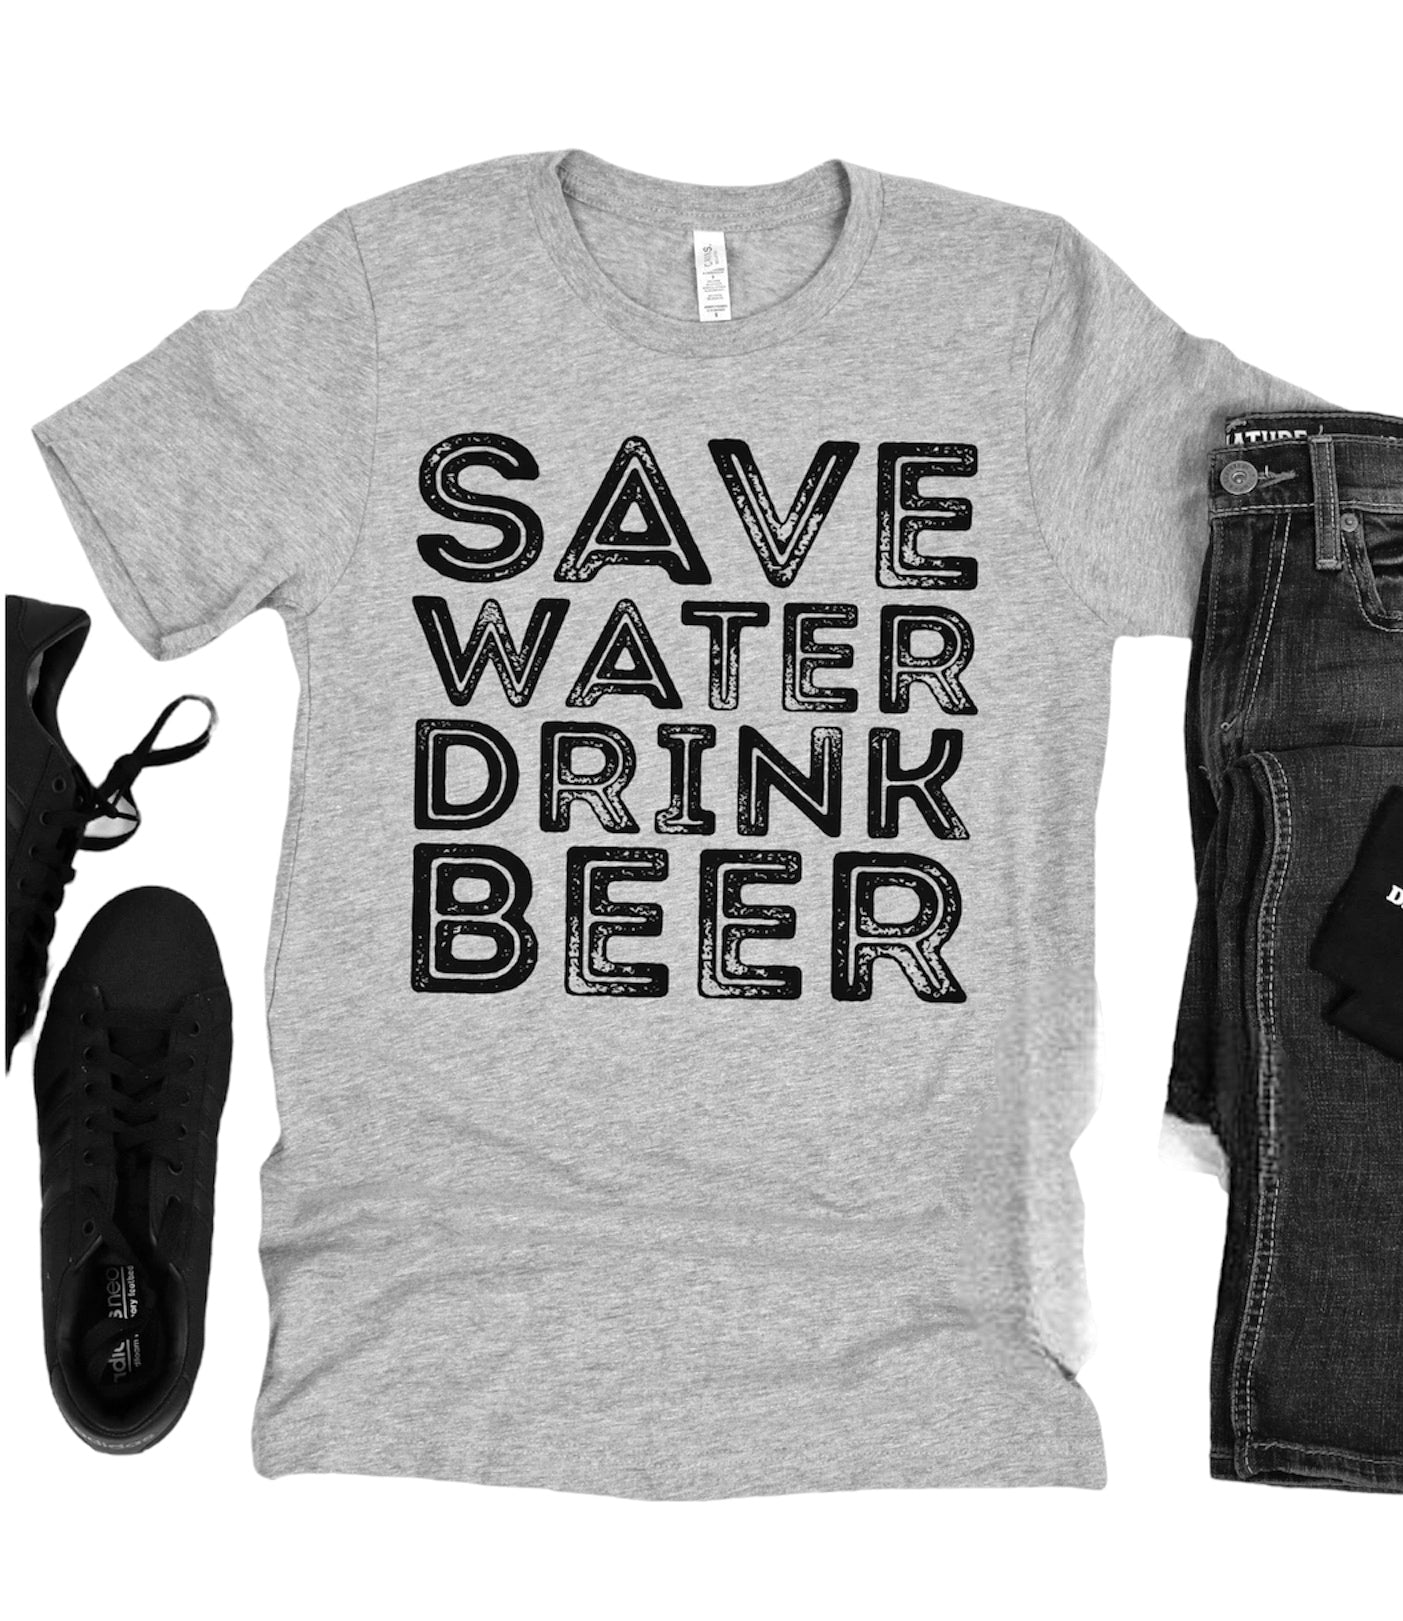 Save Water Drink Beer tee